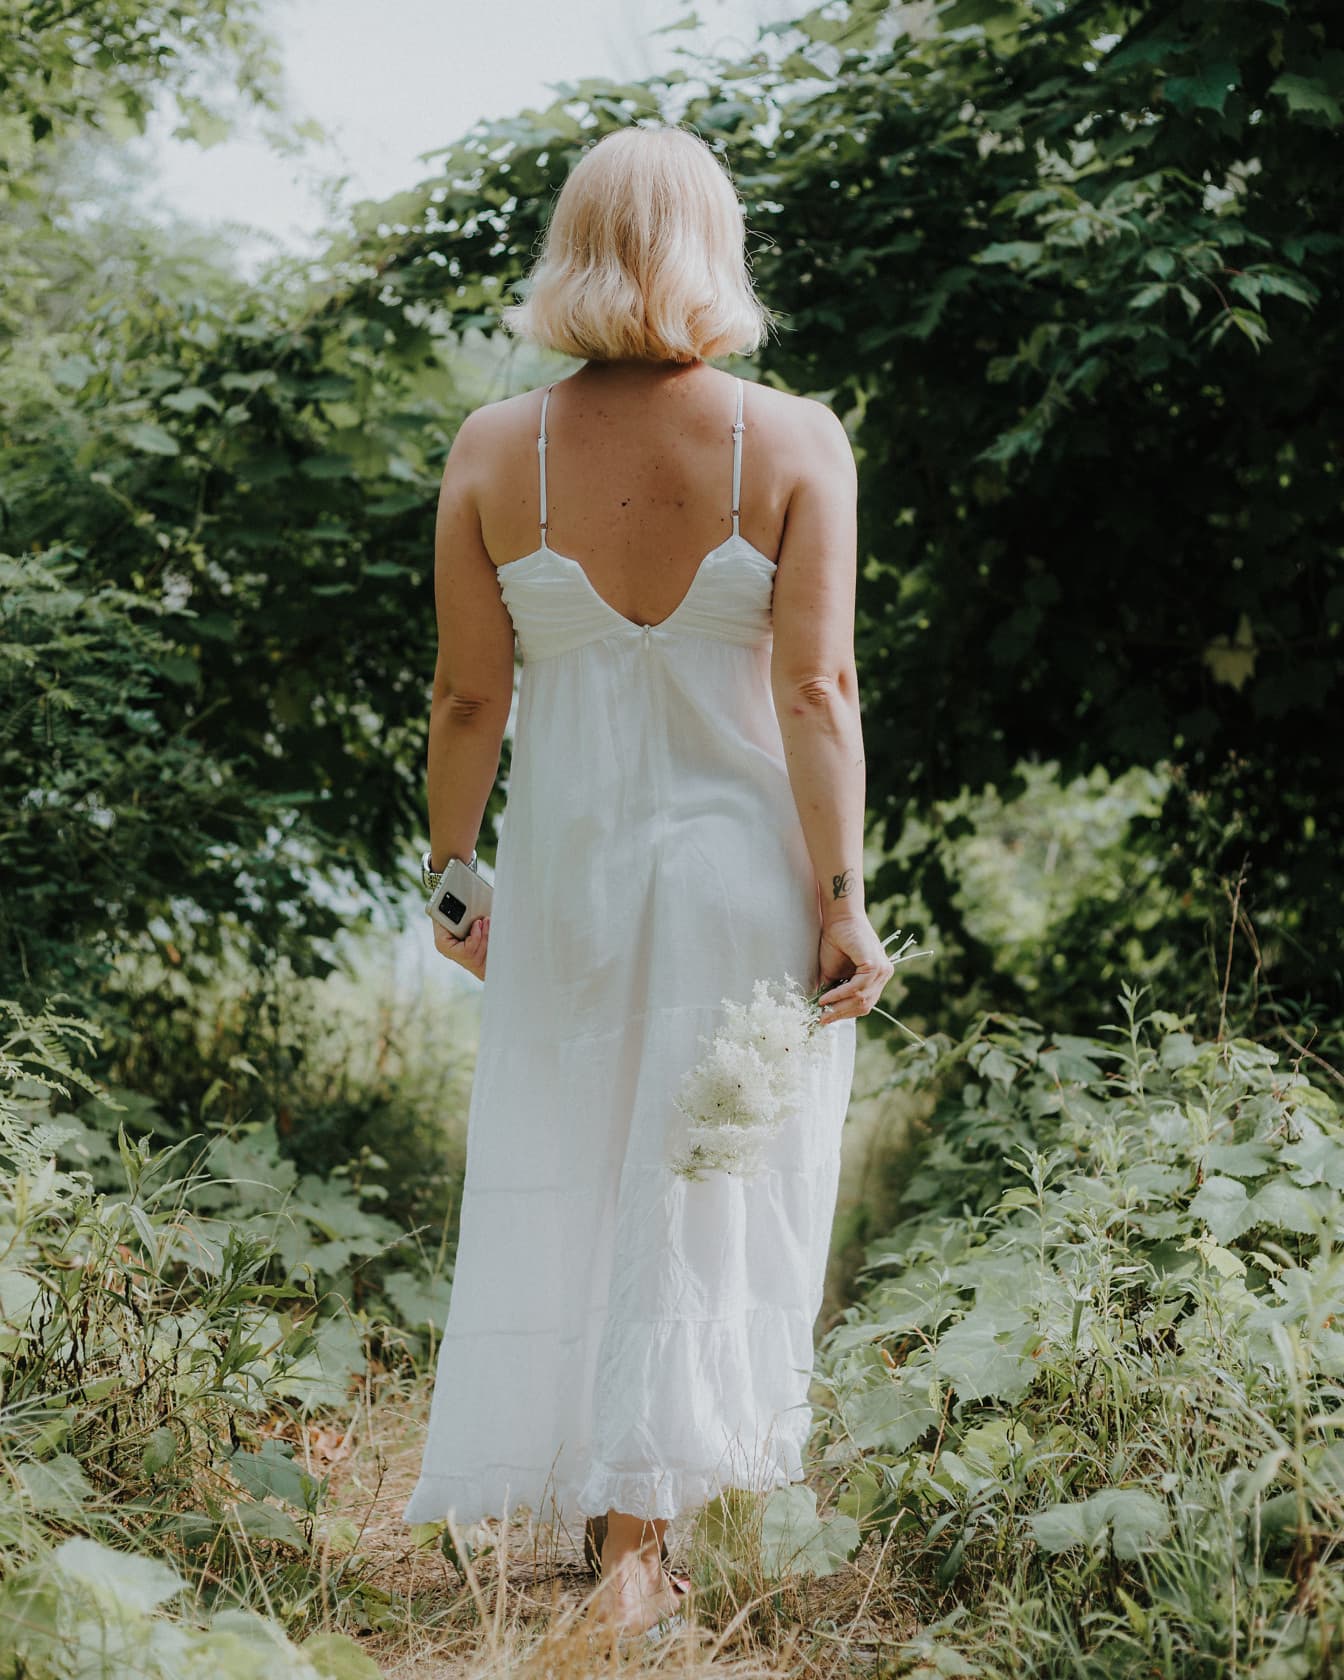 Chiếc váy cotton trắng thanh lịch trên người cô gái trẻ tóc vàng đi dạo trong rừng